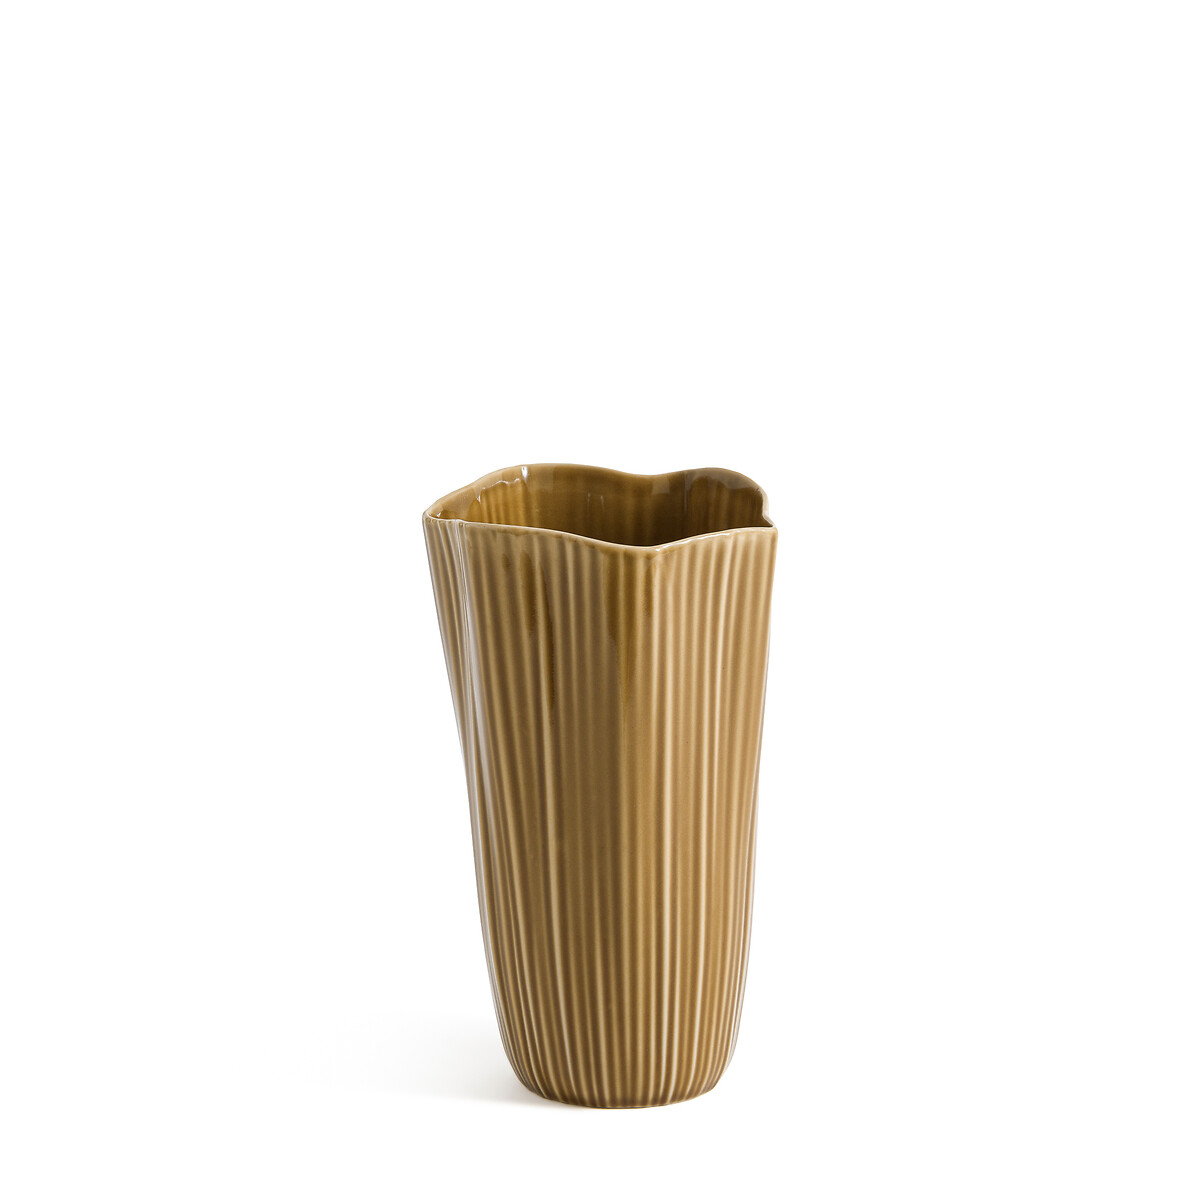 ваза из керамики маленькая модель almada единый размер бежевый Ваза граненая из керамики Akaria единый размер желтый